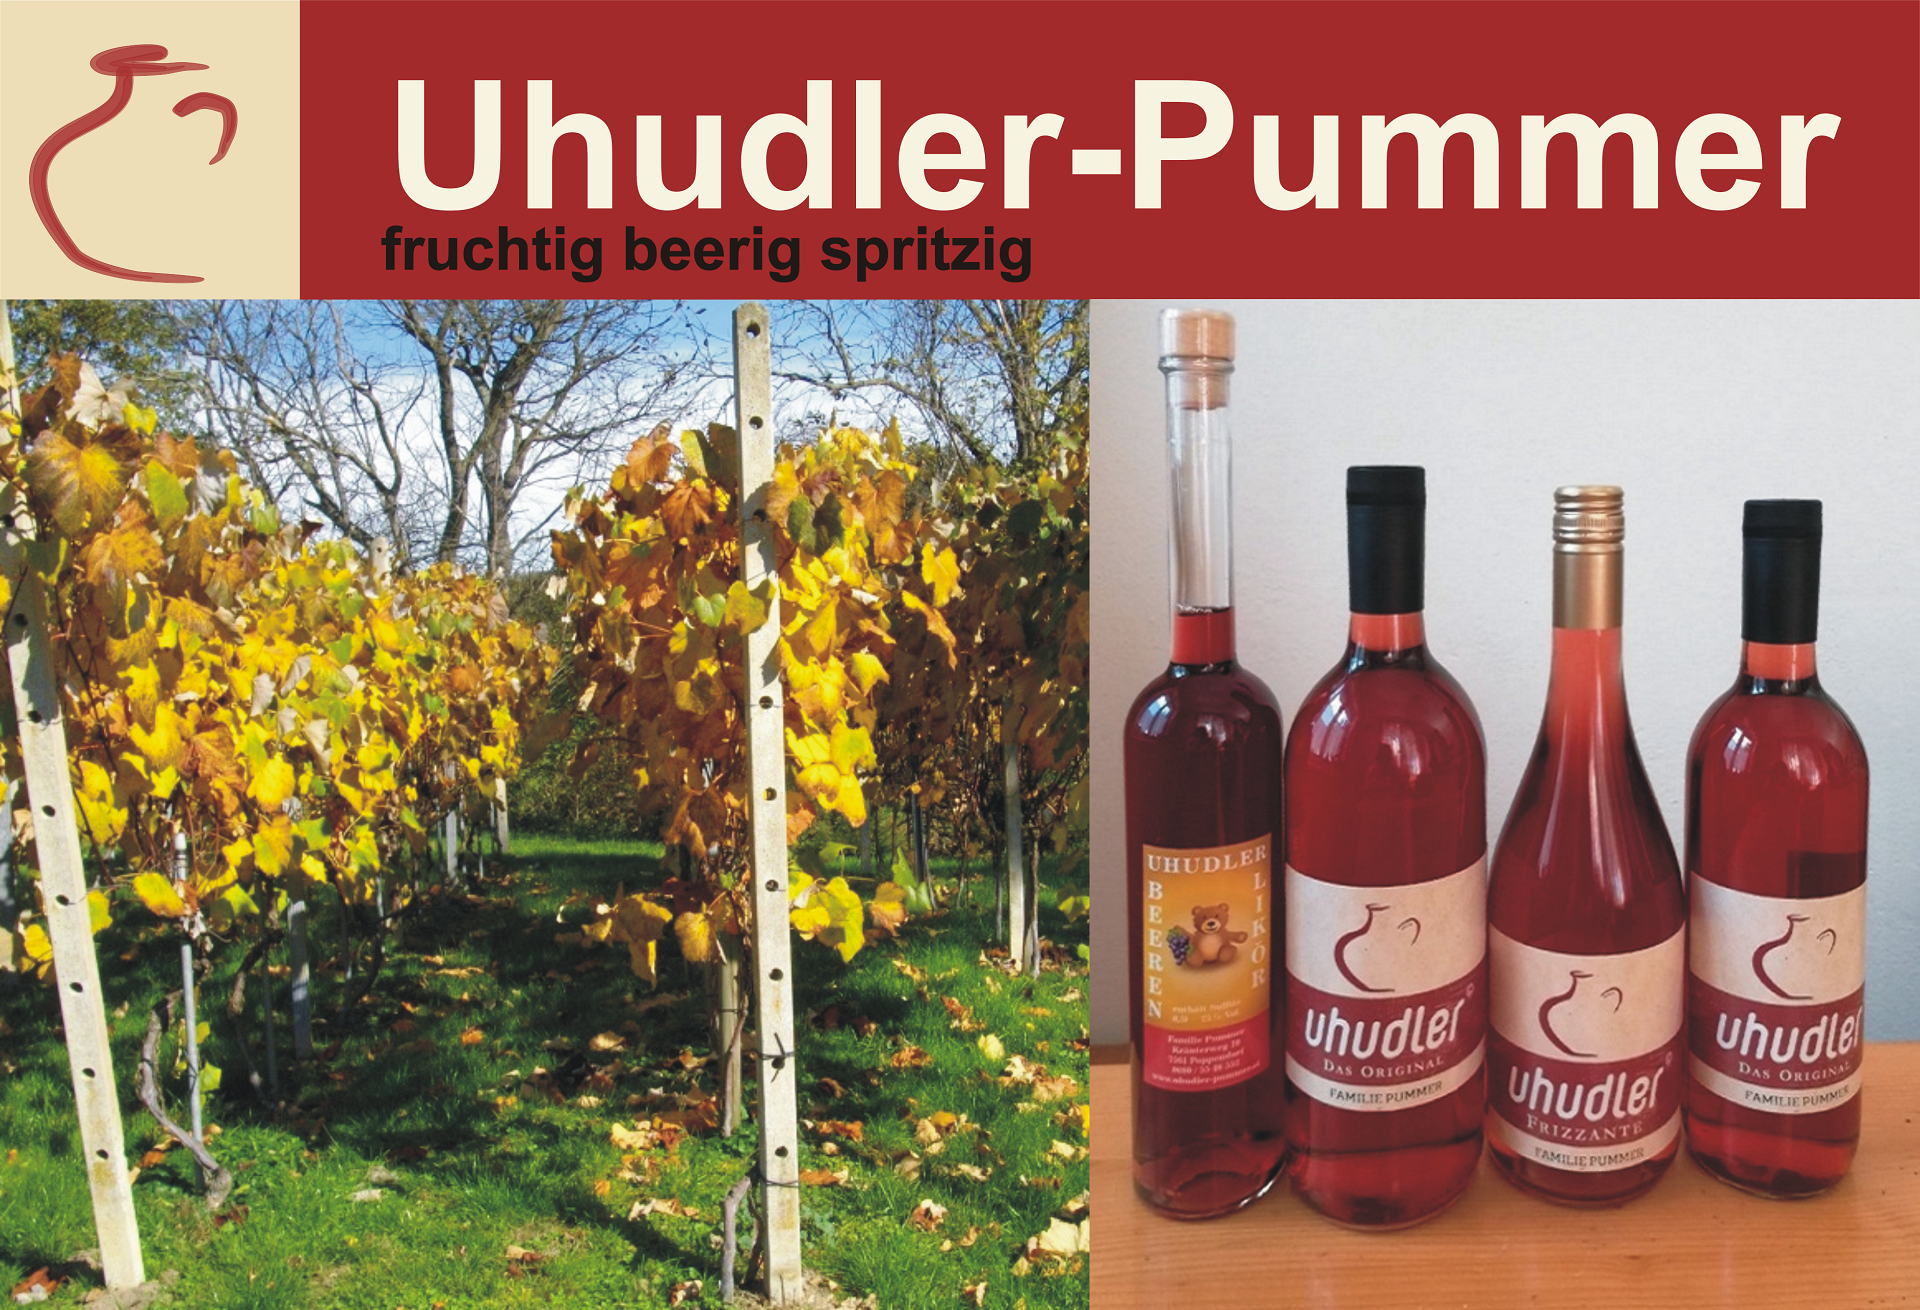 uhudler-kaufen-uhudler-shop-uhudler-pummer-1